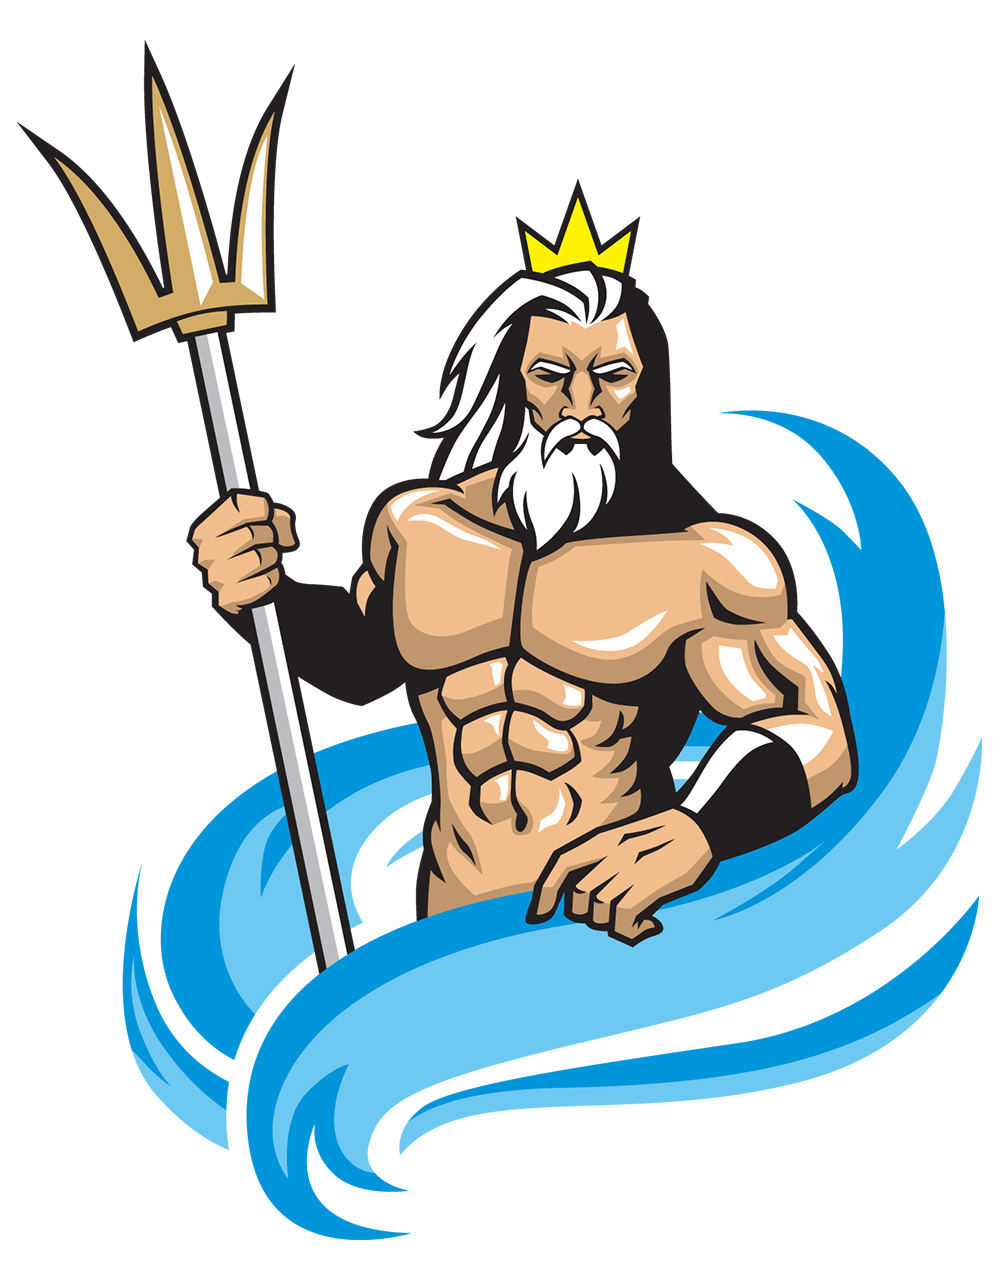 Bůh vody Poseidon byl znázorňován s trojzubcem, kterým rozpoutával bouře, a někdy sedící na delfínovi (Zdroj: © bazzier / stock.adobe.com)